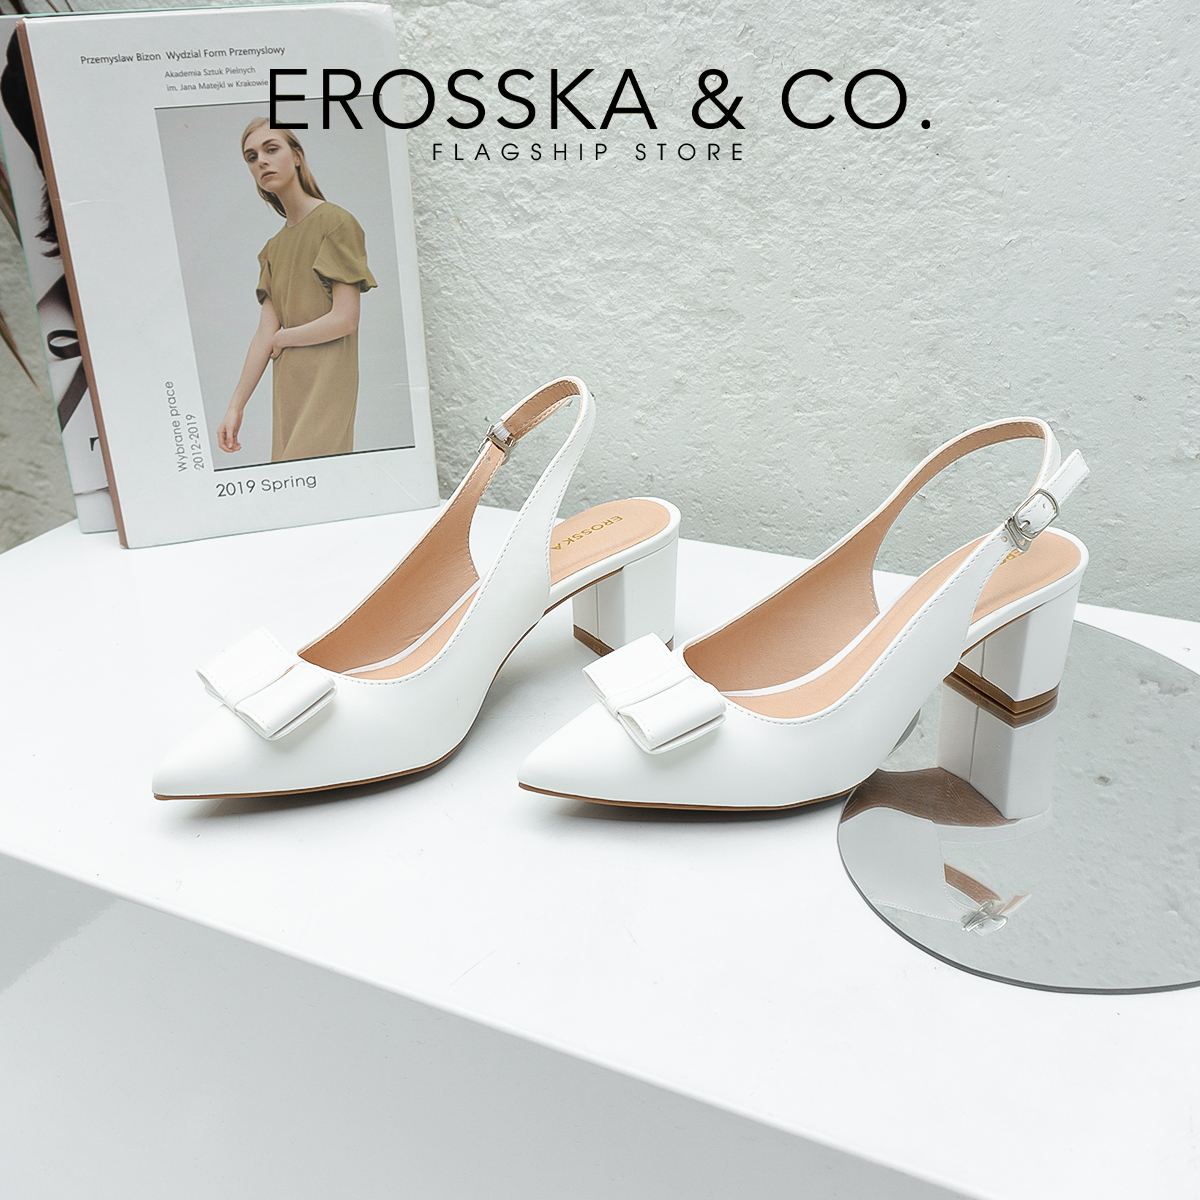 Erosska - Giày cao gót mũi nhọn phối quai đính nơ cao 5cm màu đen - EH034